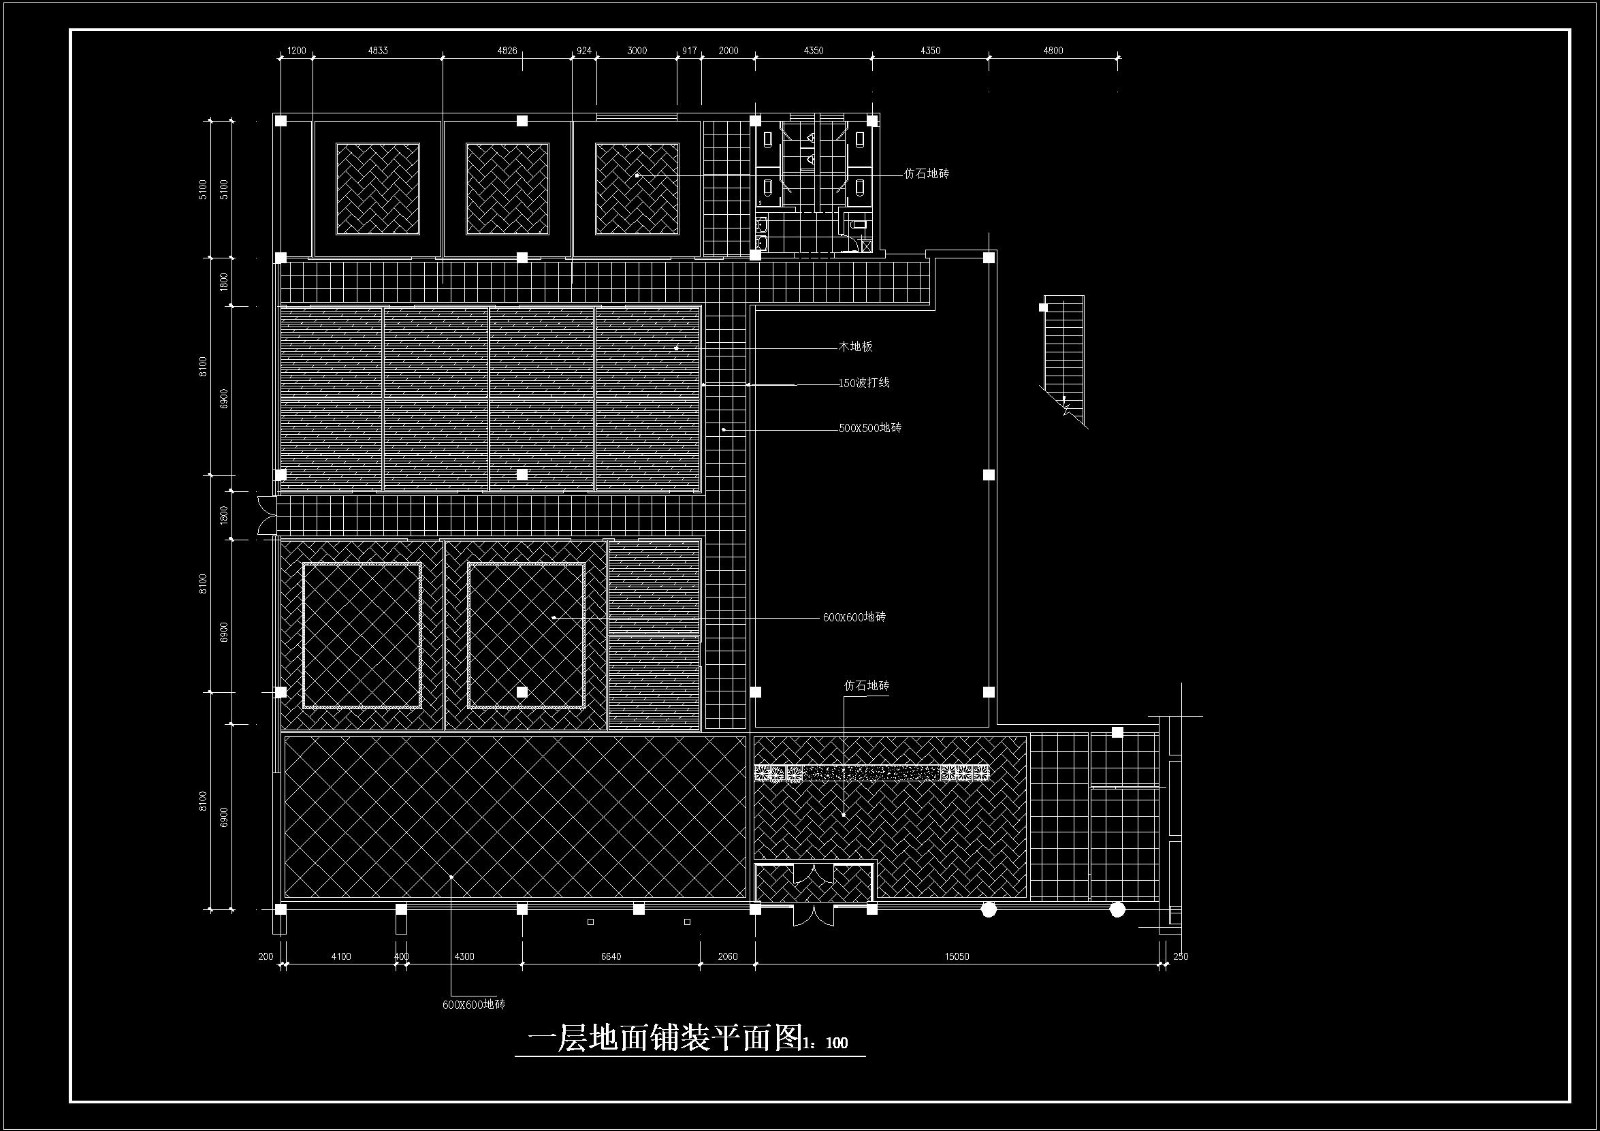 100套餐厅、食堂、宾馆等设计CAD施工图-3